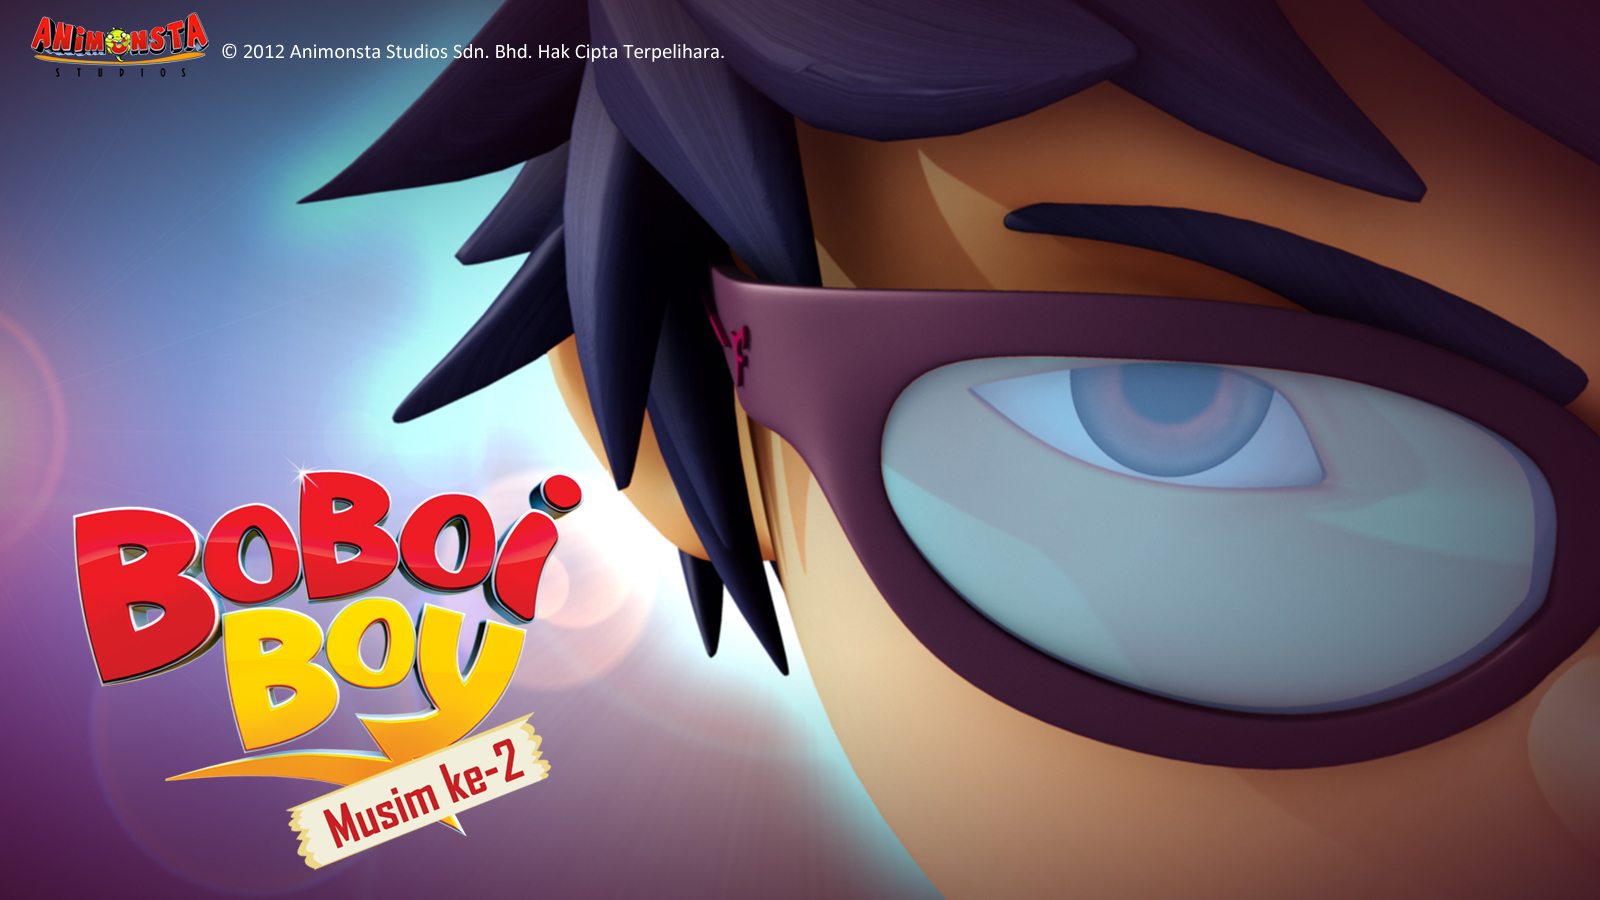 Gambar BoboiBoy Musim ke-2 - Viral Cinta